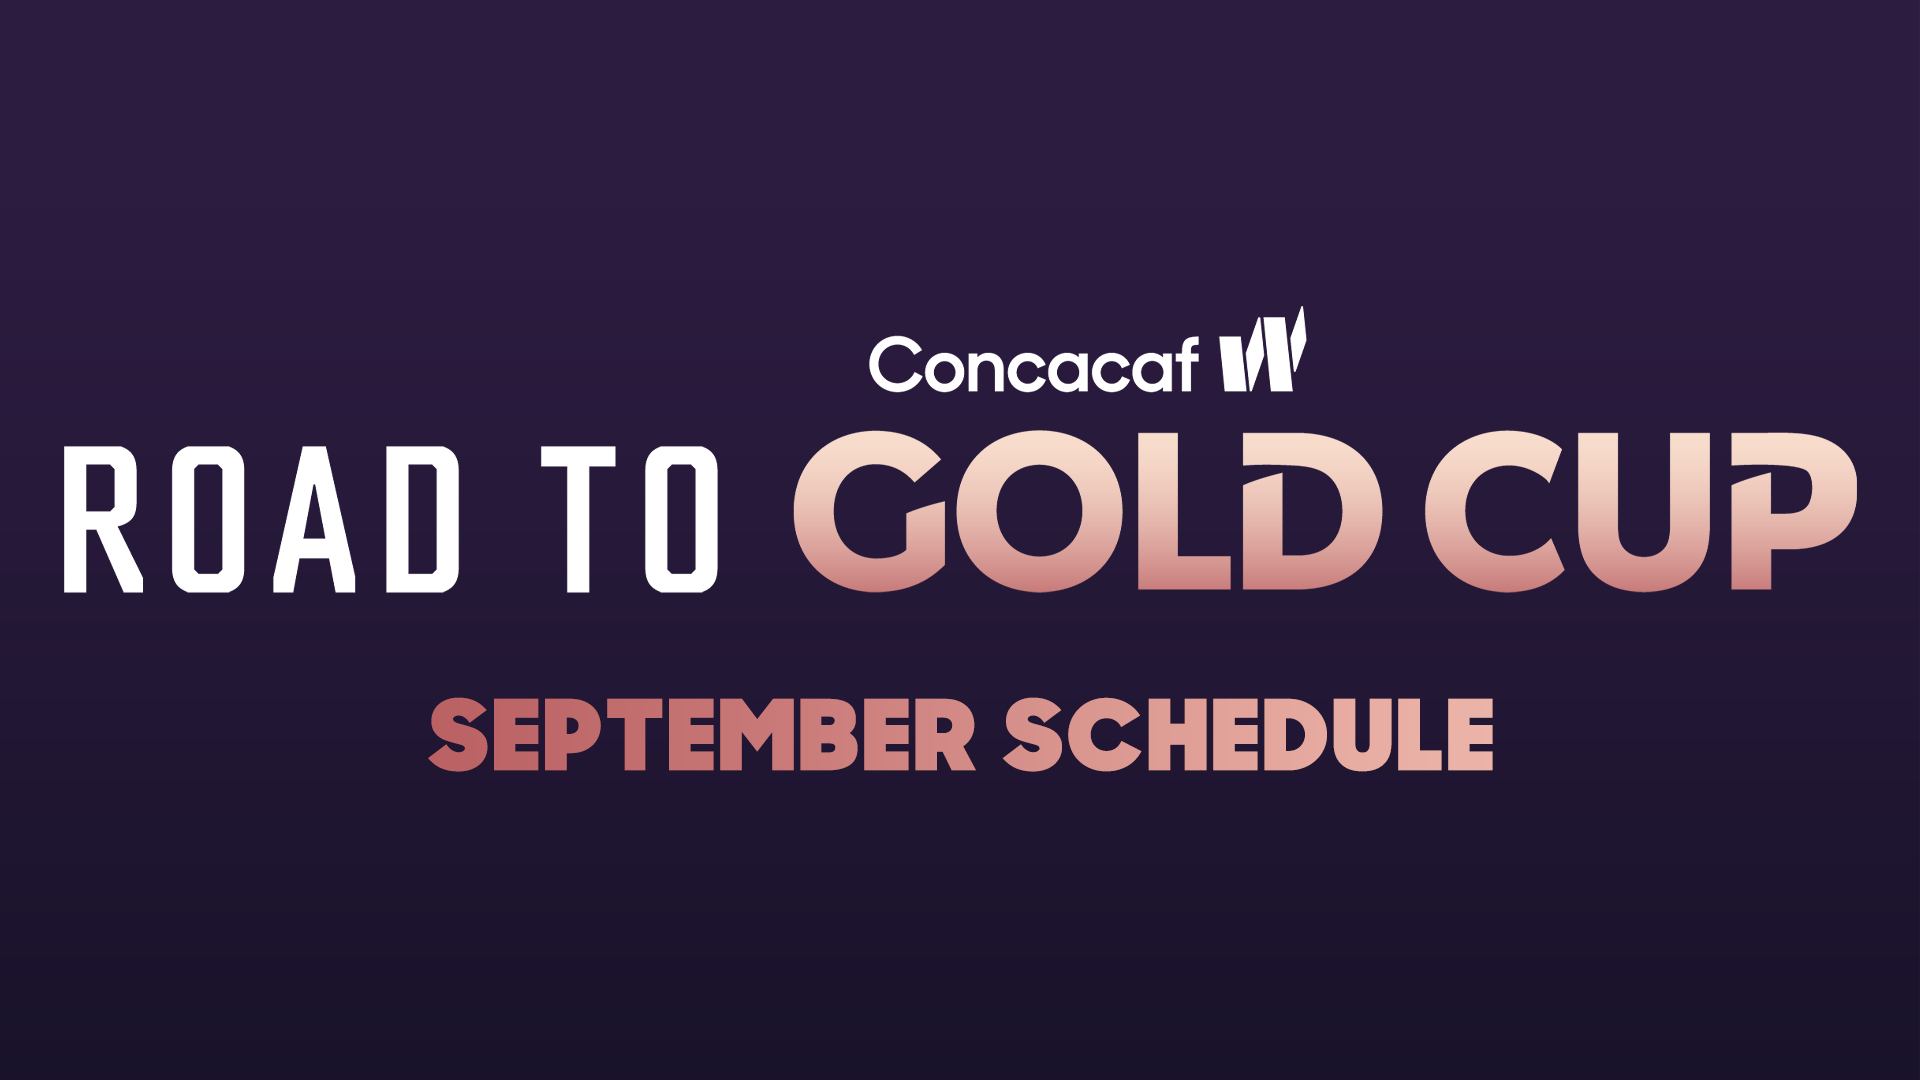 Concacaf confirma el calendario de septiembre para la fase de grupos del Camino a la Copa Oro W 2023